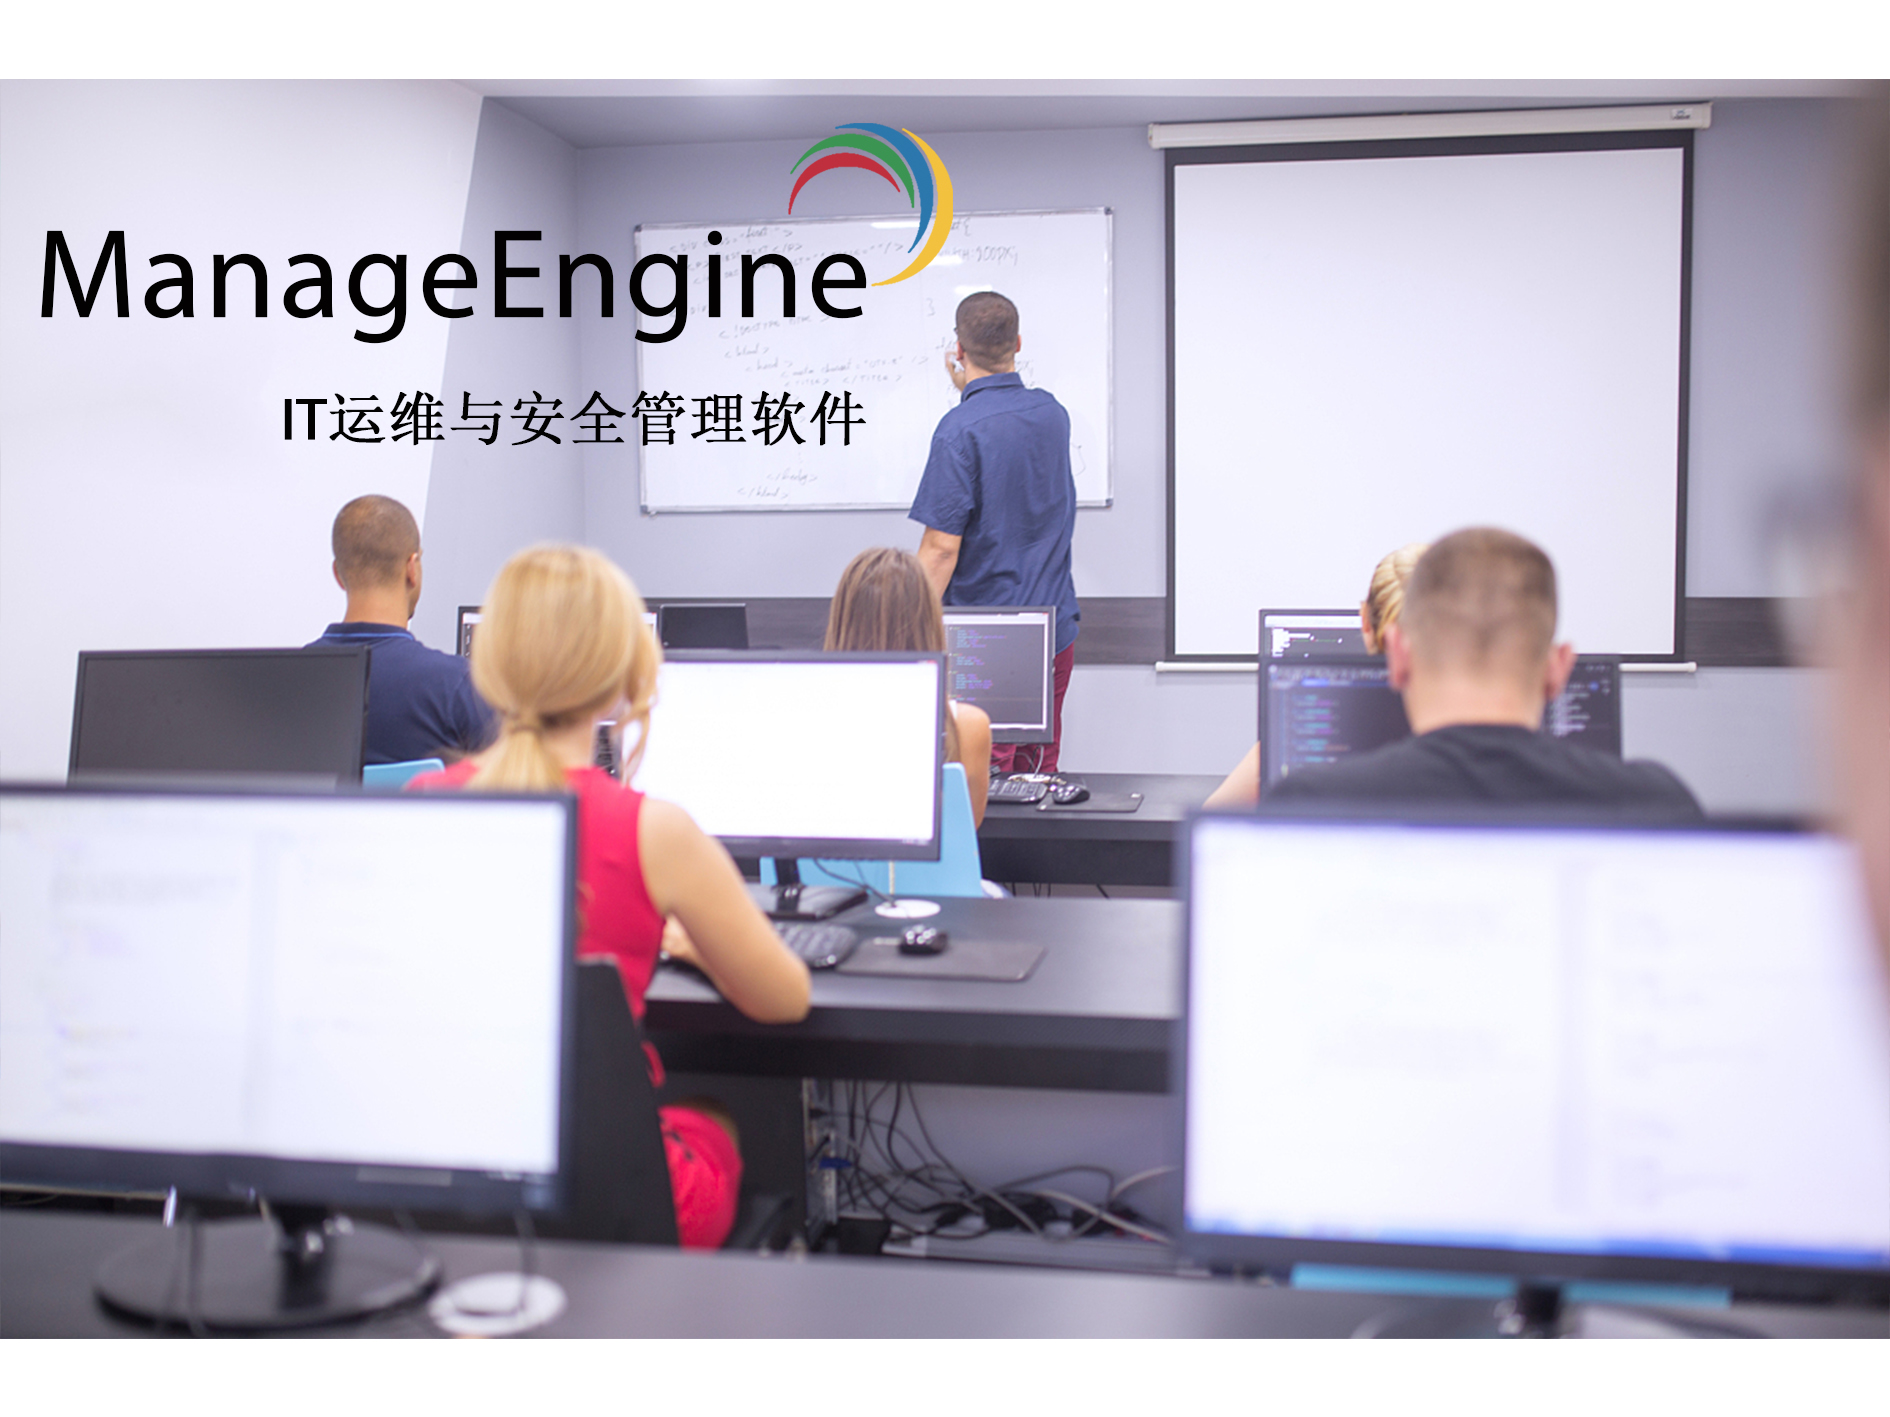 网络性能管理系统 - ManageEngine智能网络性能监控系统